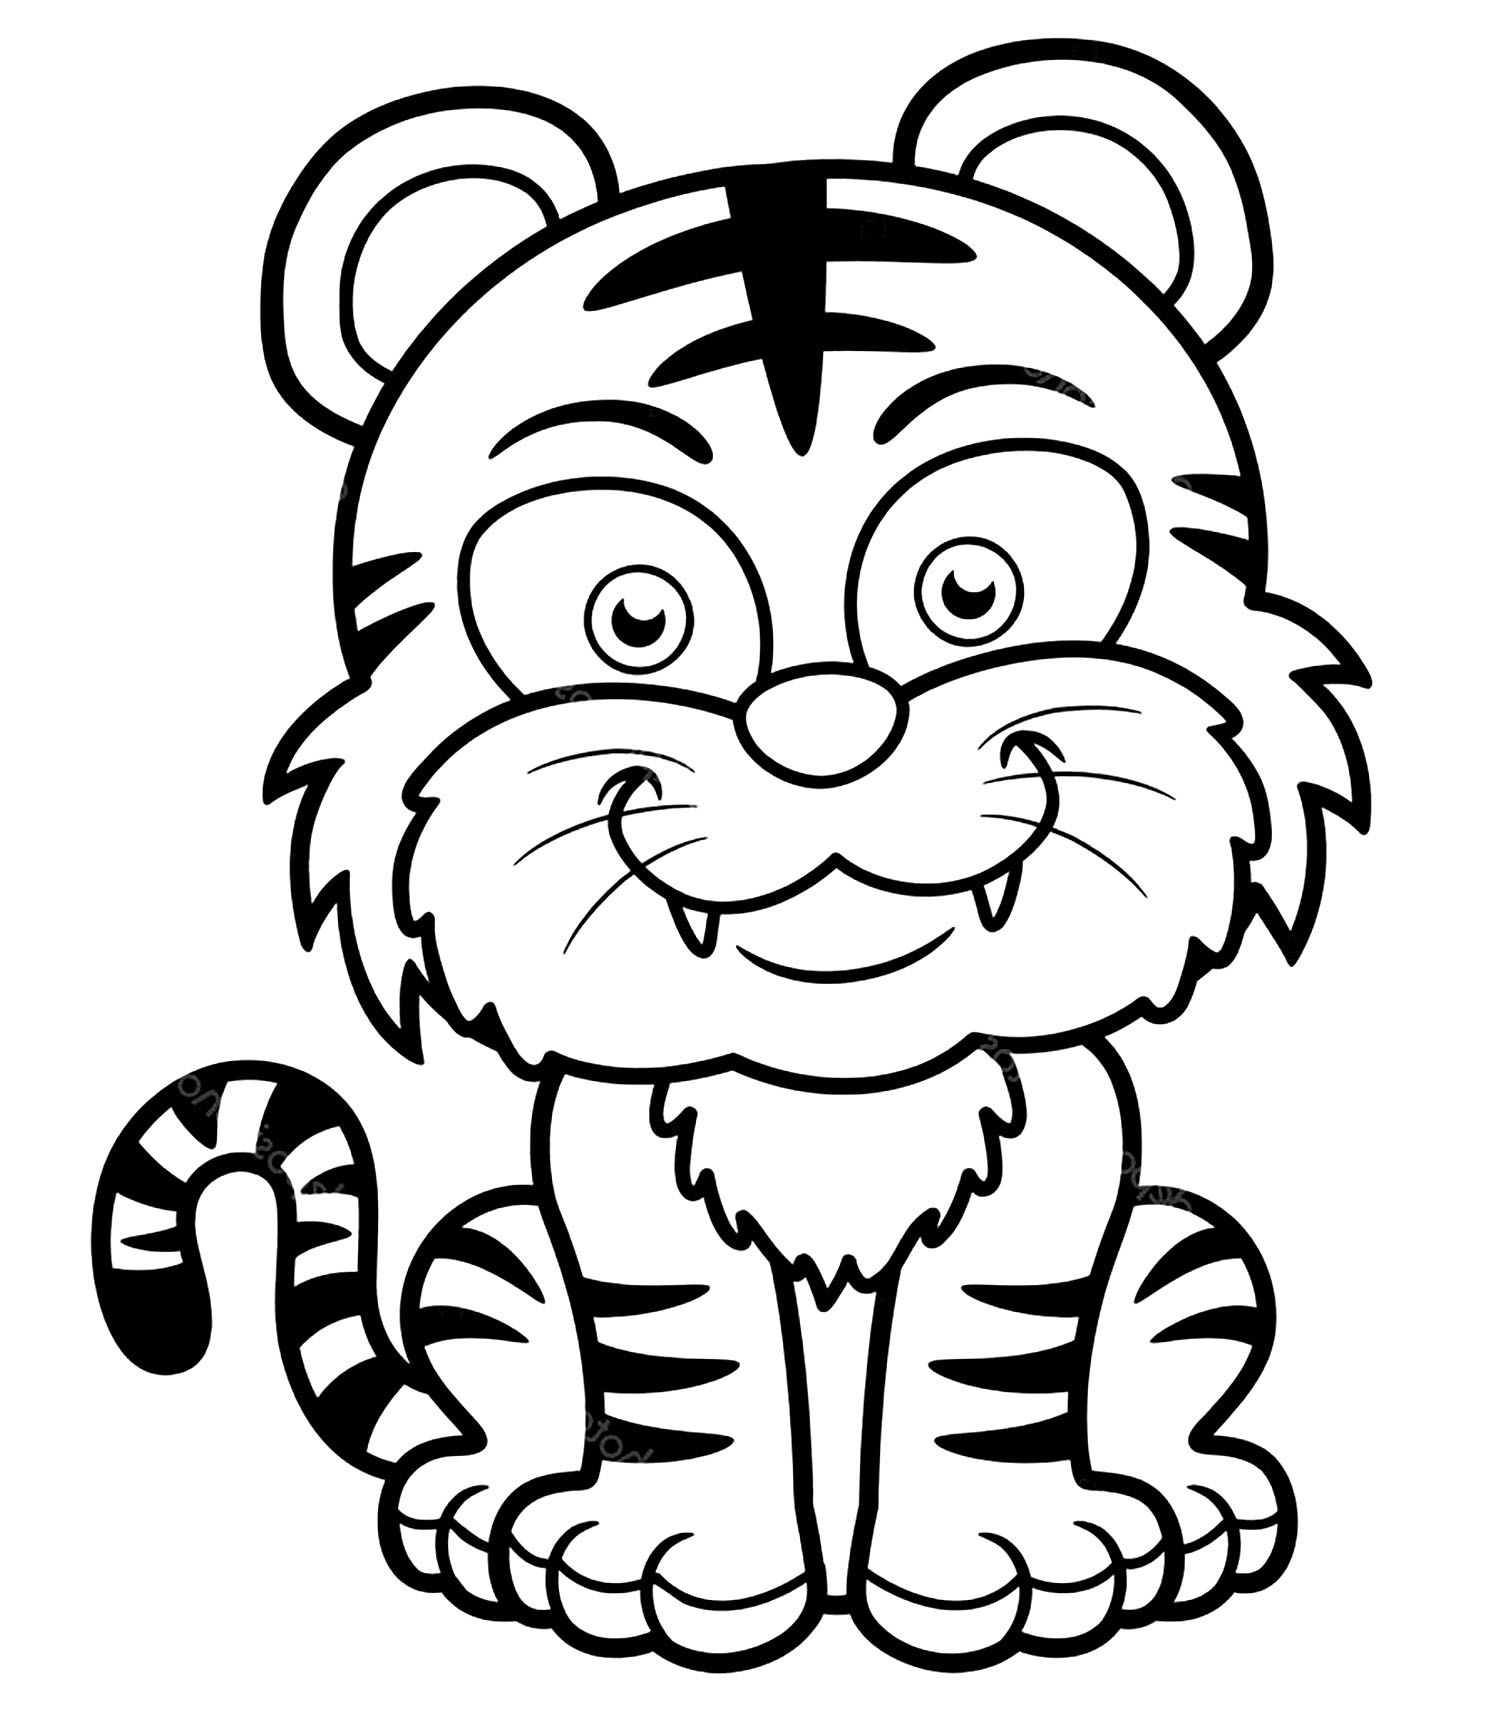 Image de tigre à colorier, facile pour enfants